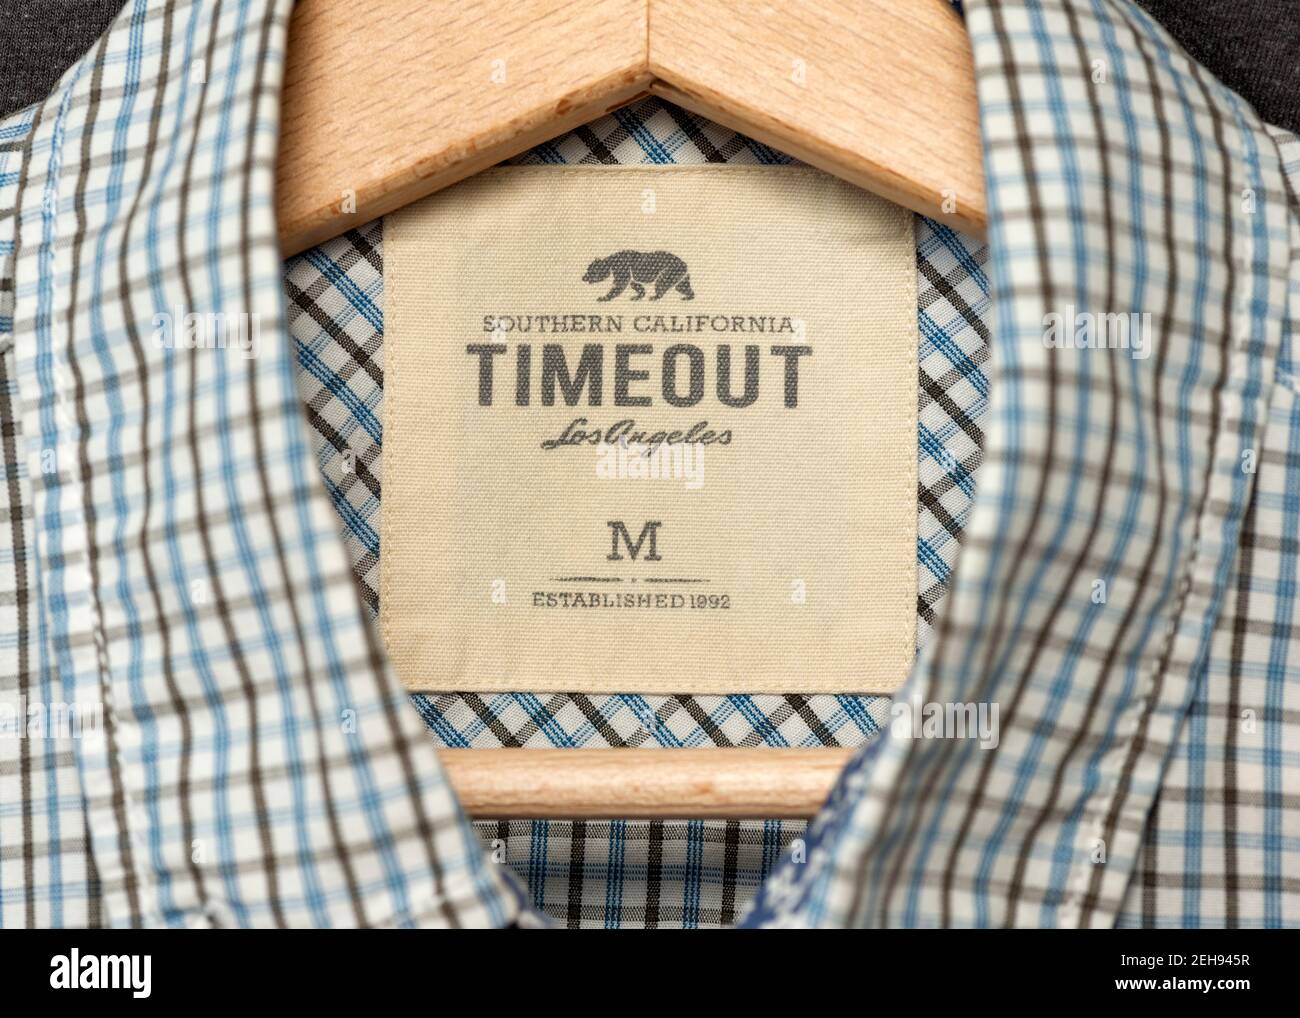 Timeout Los Angeles Kleidung und Herrenmode Logo und Label auf Blaues Hemd, das auf einem Holzhänger hängt Stockfoto